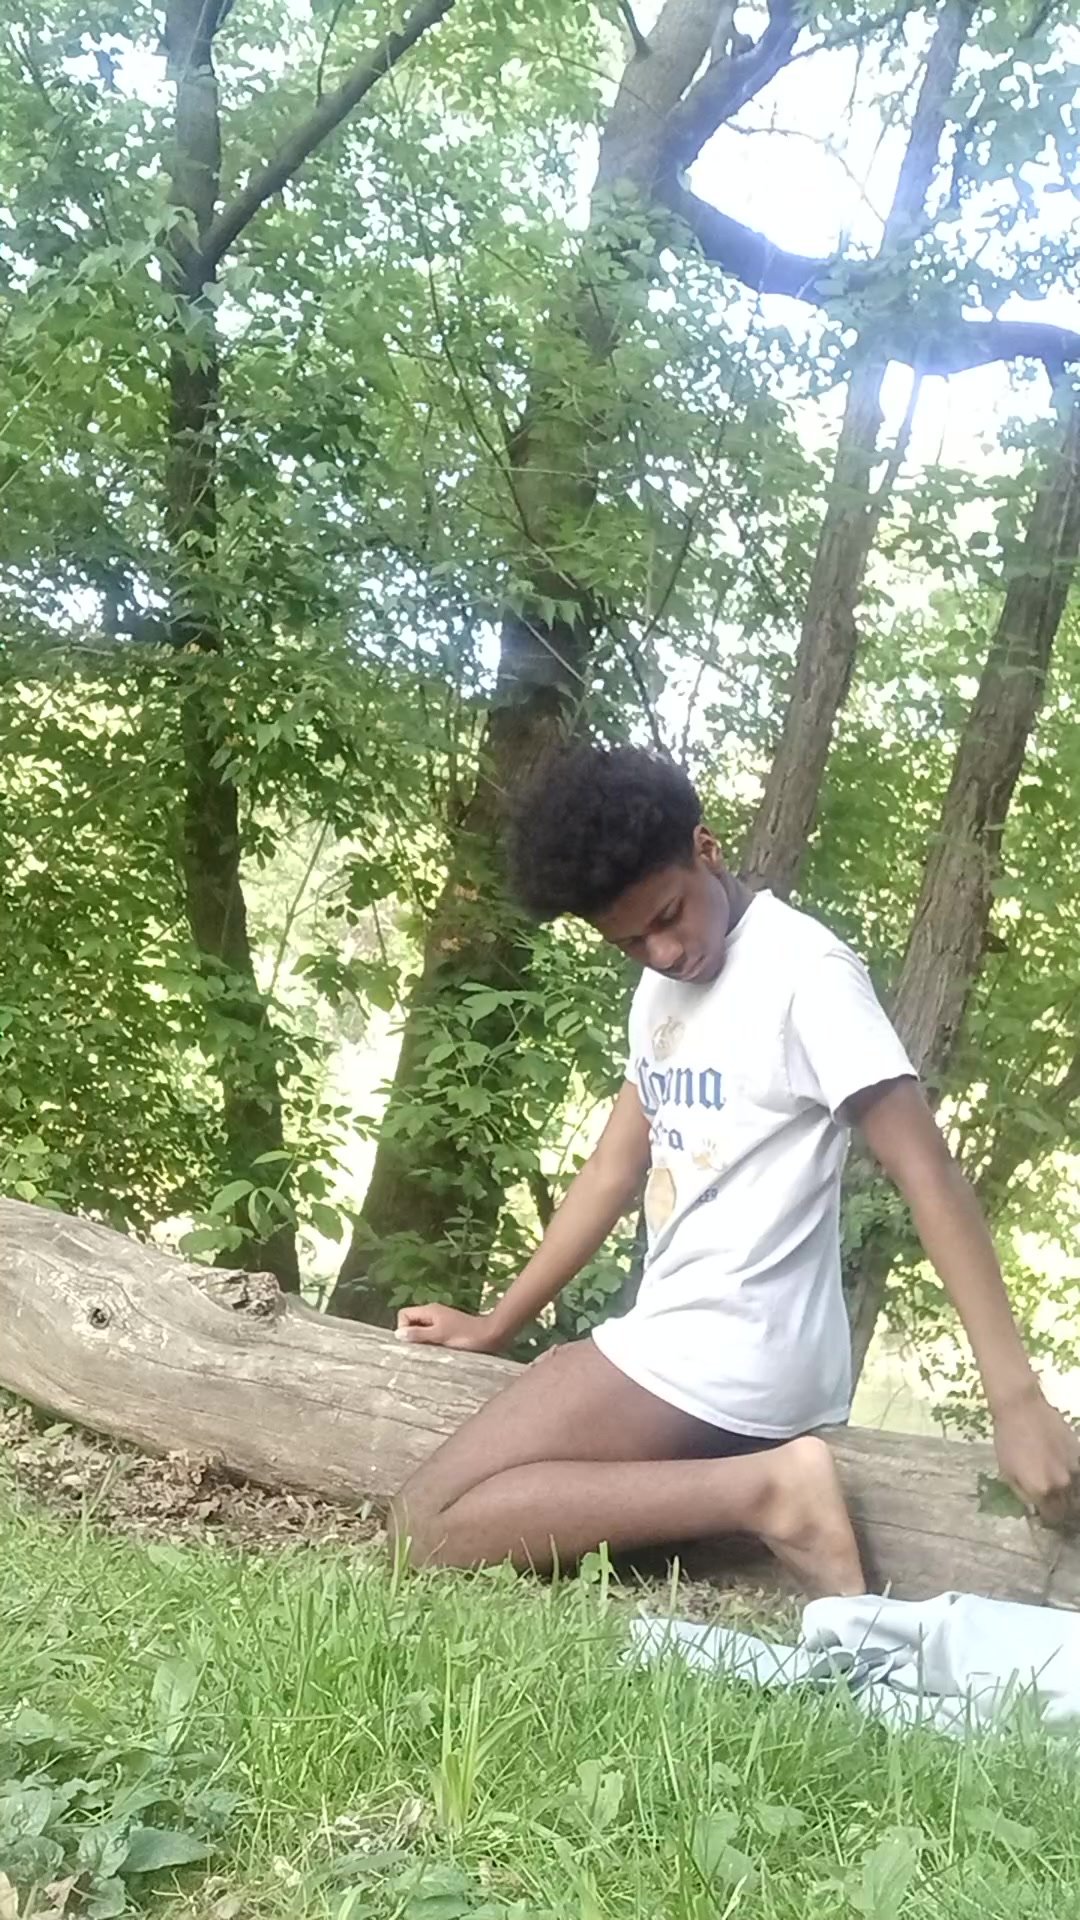 Black teen humping a log